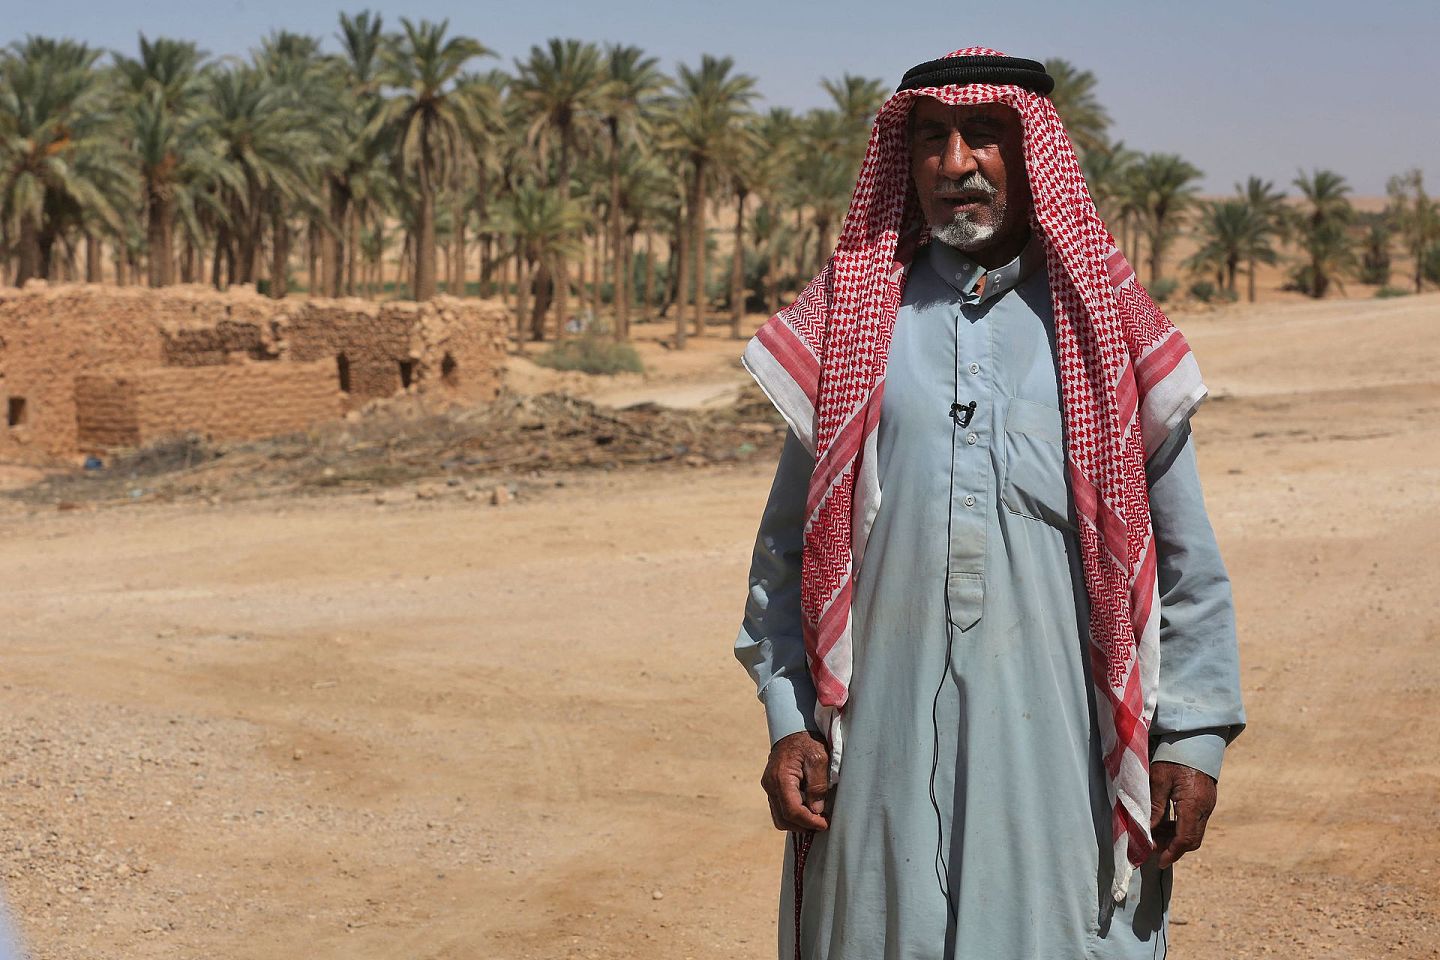 当地时间2021年9月16日，伊拉克安巴尔省中部Wadi Houran地区的Al-Sahl村，老人Abu Majid接受采访。在伊拉克广阔的西部沙漠，大约有200户人家住在Al-Sahl村，一个与外界基本隔绝的小村庄，他们唯一的邻居是该国最大的军事基地之一。（视觉中国）